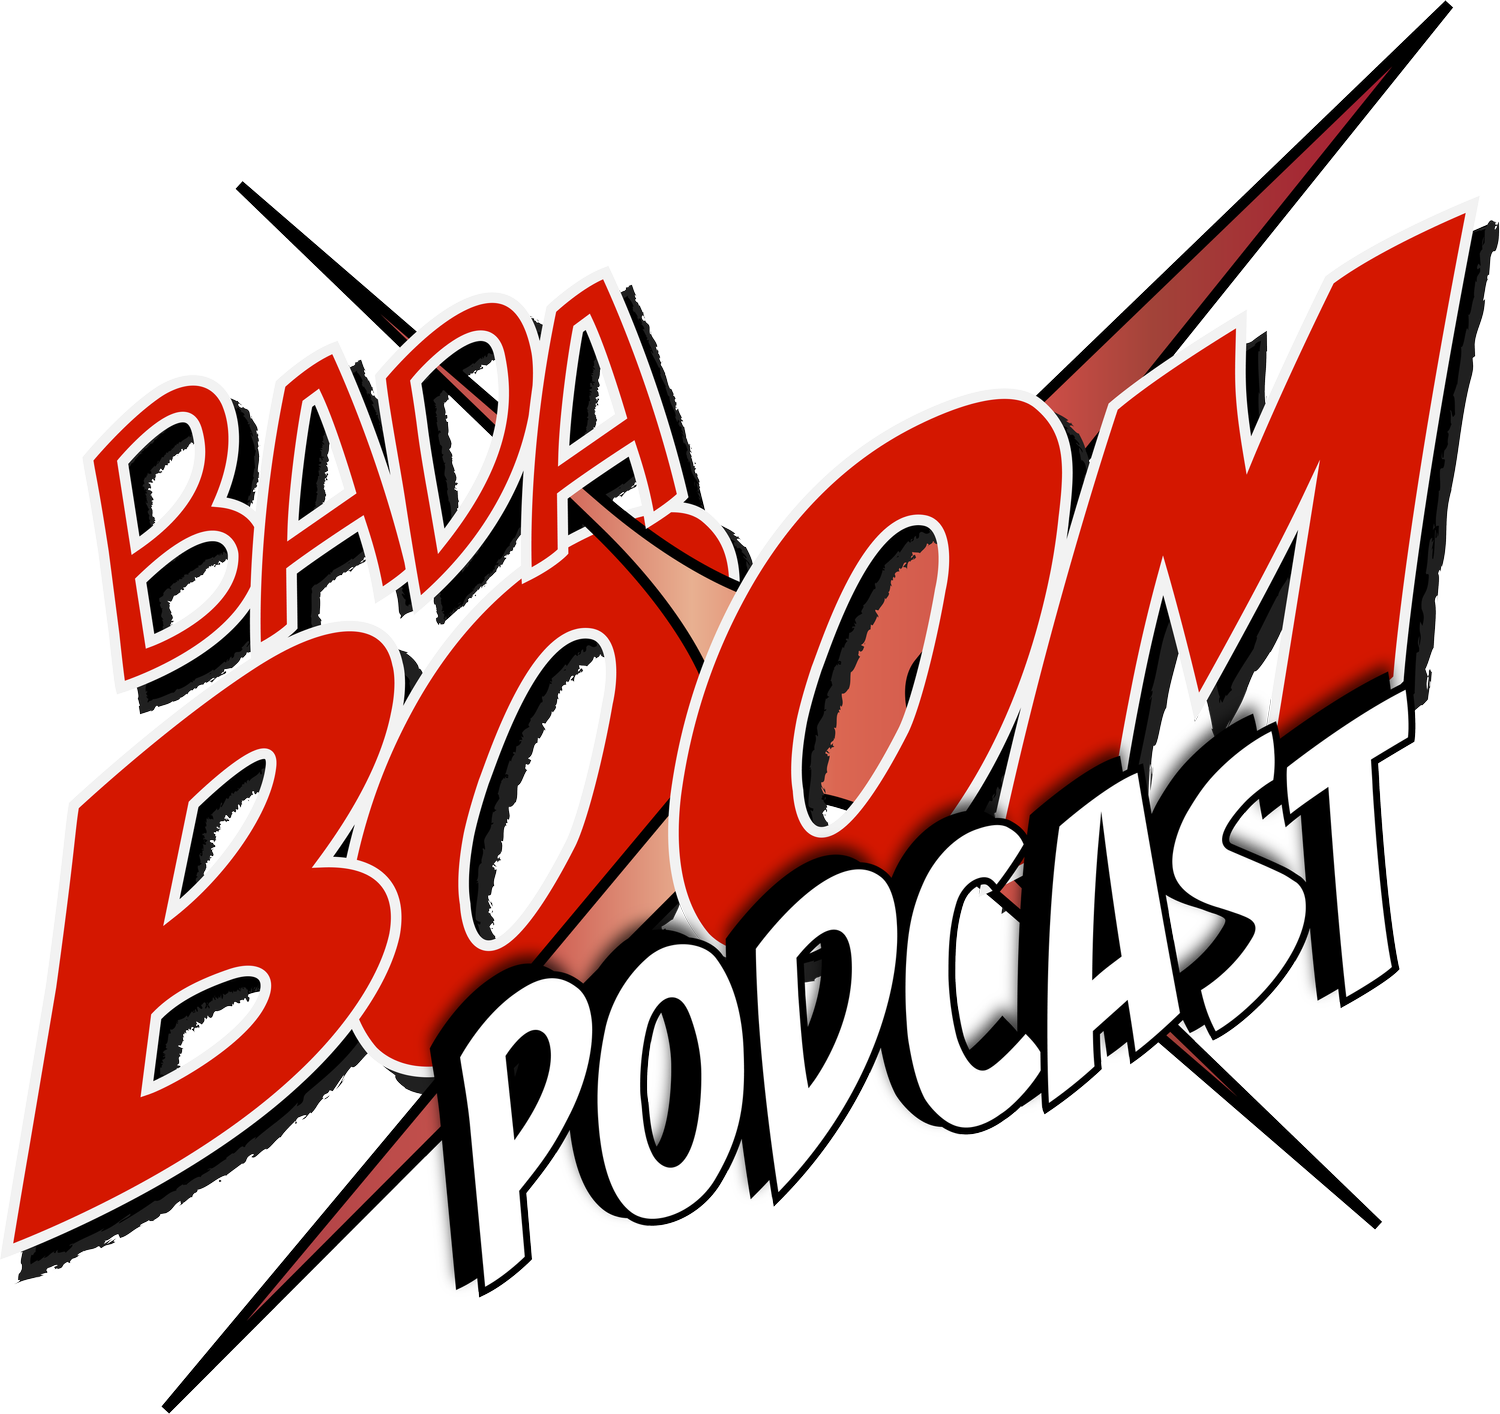 Badaboom Podcast